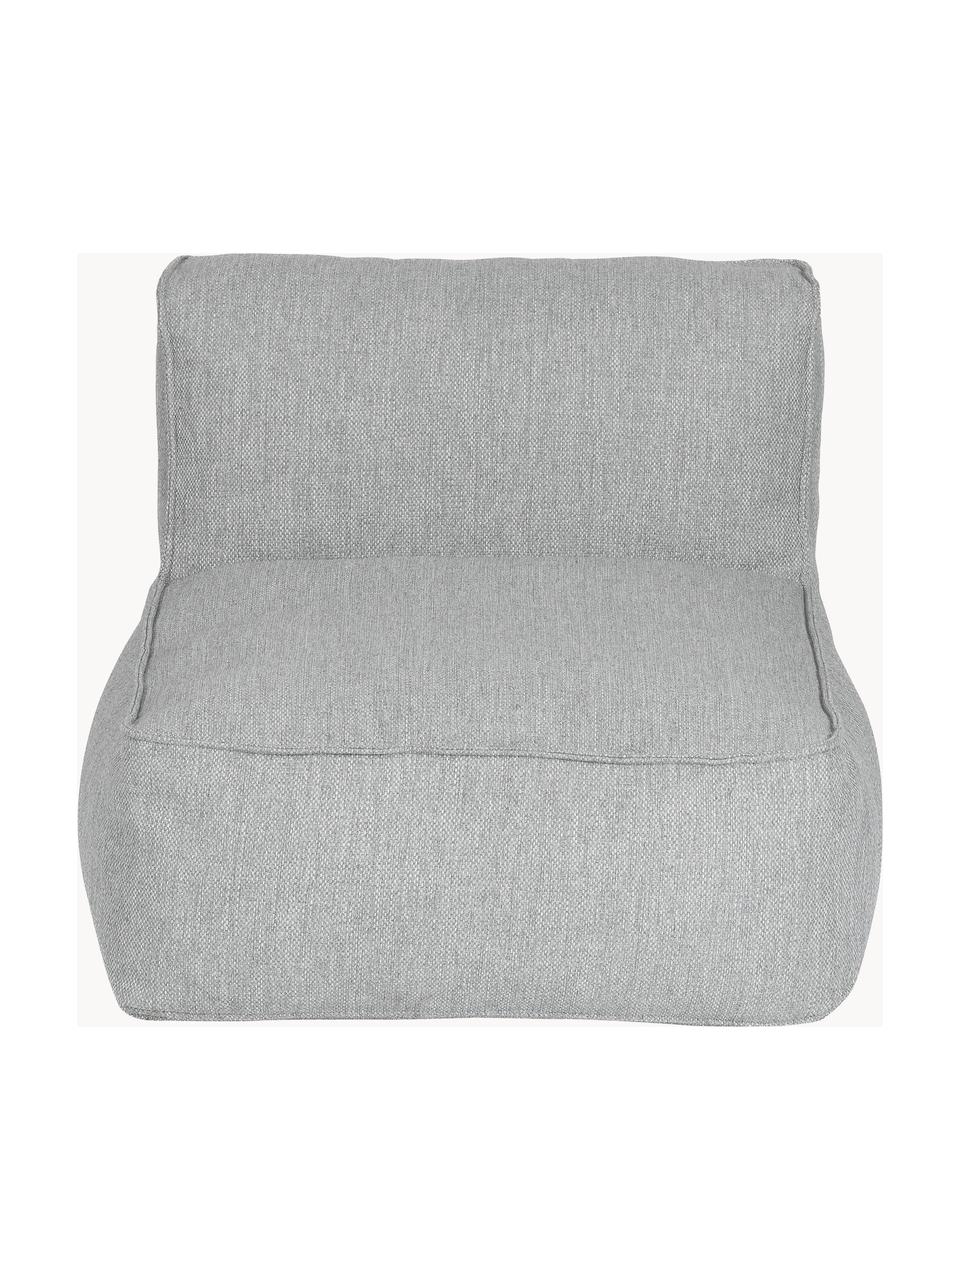 Módulo central de exterior sofá Grow, Tapizado: 100% poliéster, resistent, Tejido gris claro, An 75 x F 95 cm